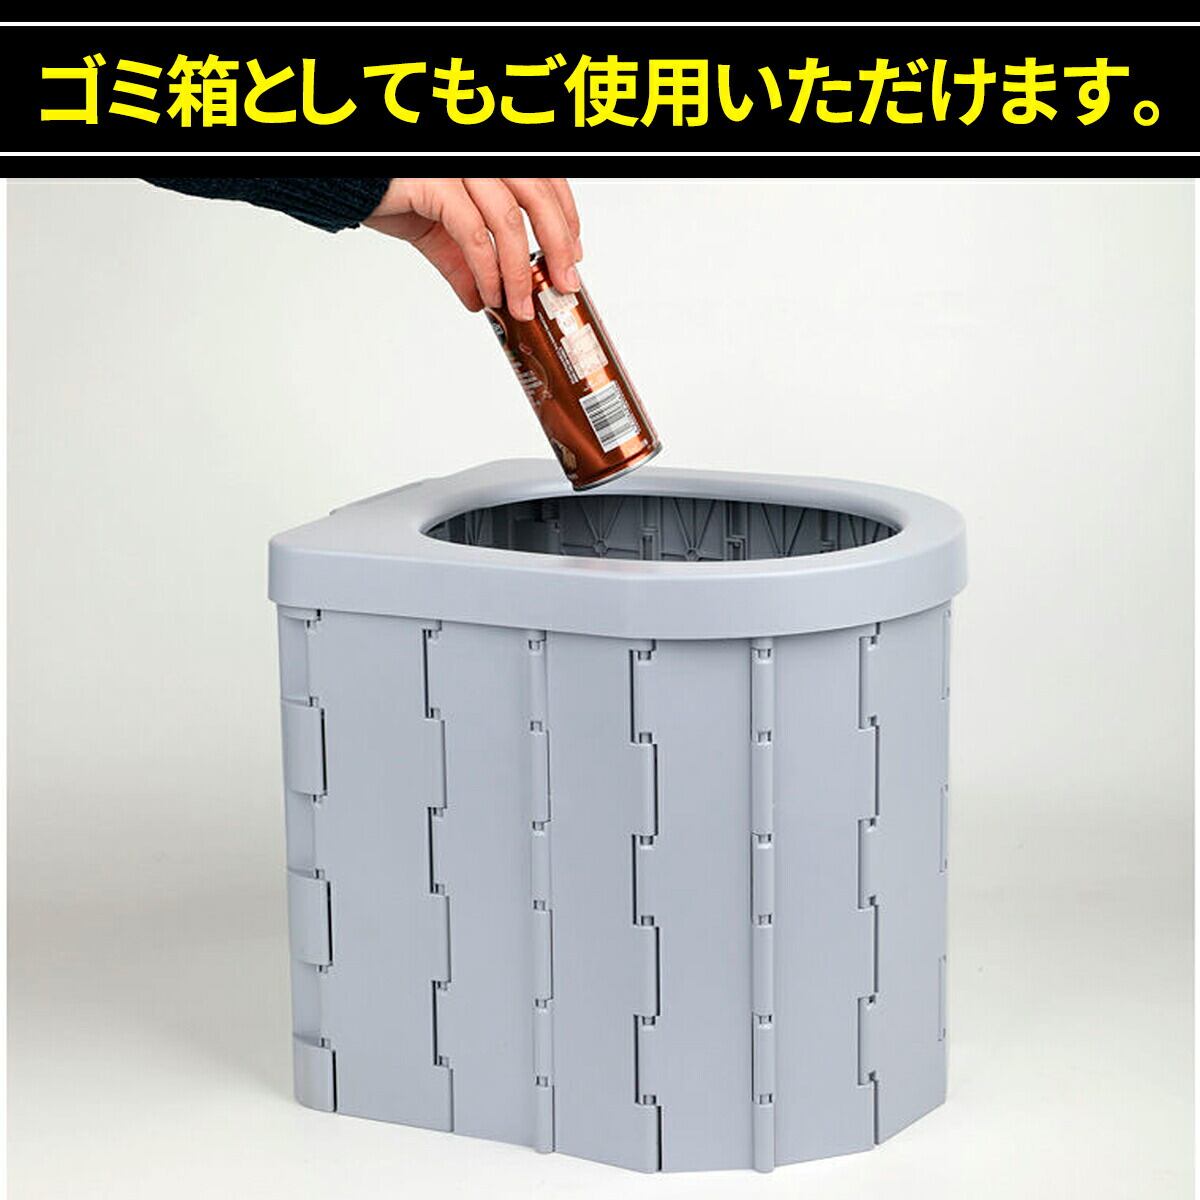 最新版 ポータブルトイレ 折り畳み 排泄処理袋付き 簡易トイレ 防災